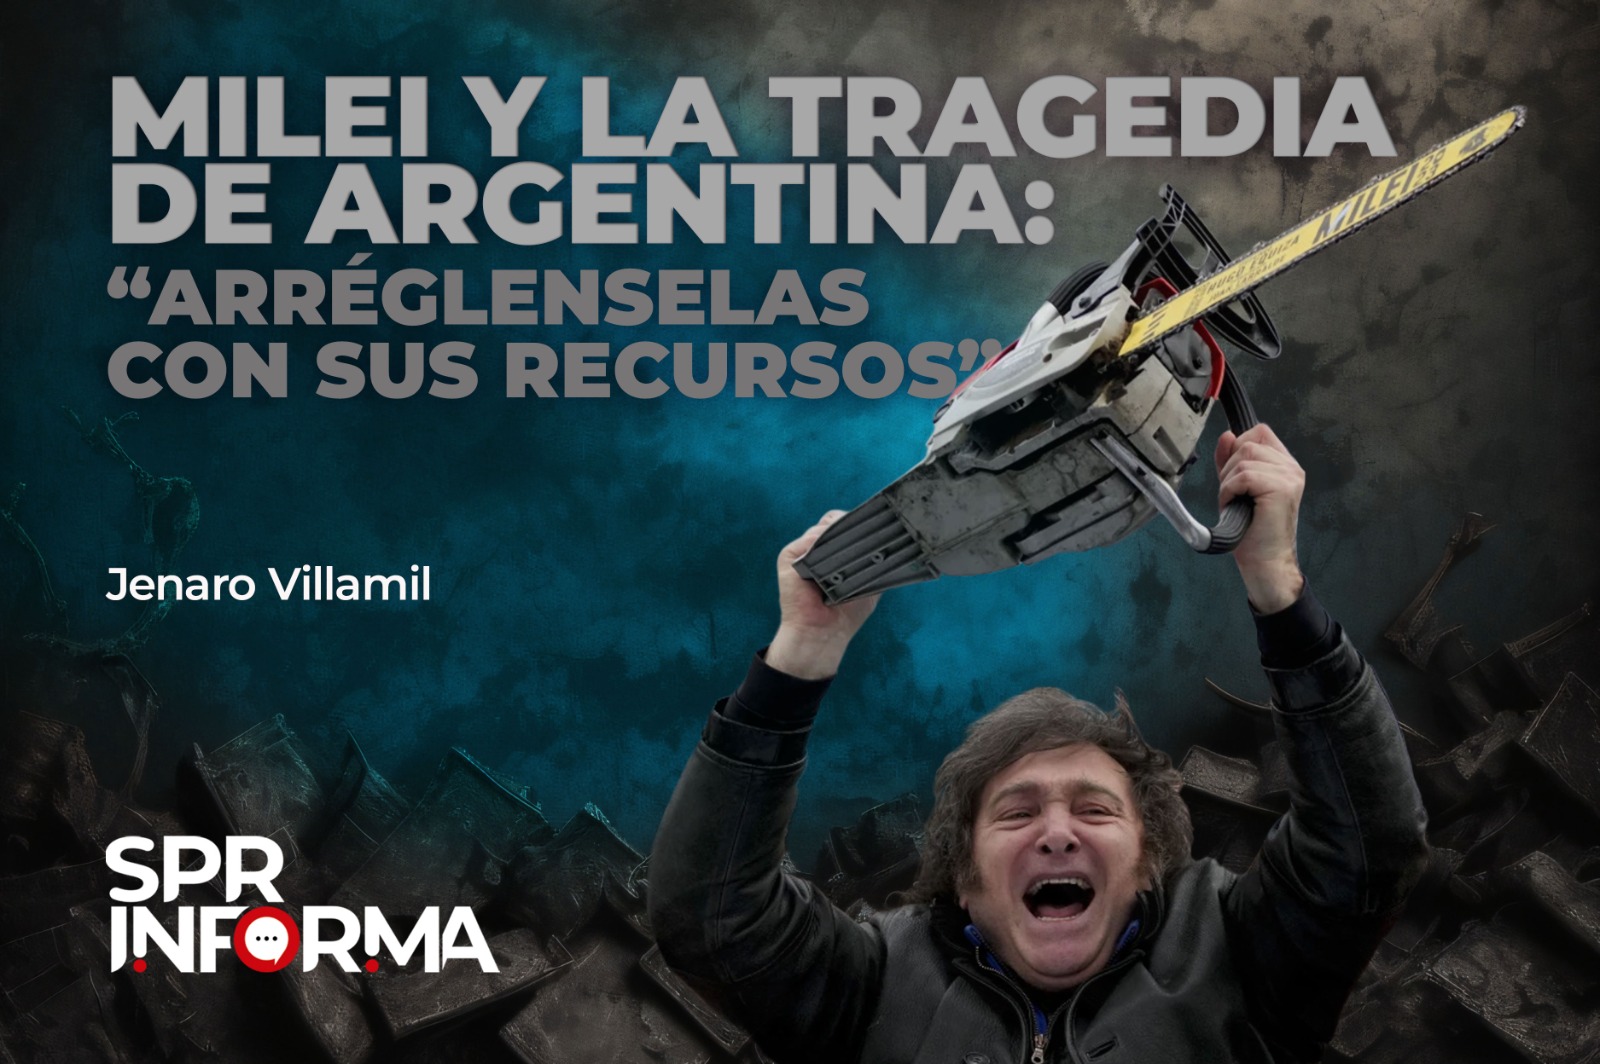 Milei y la tragedia de Argentina: “Arréglenselas con sus recursos”